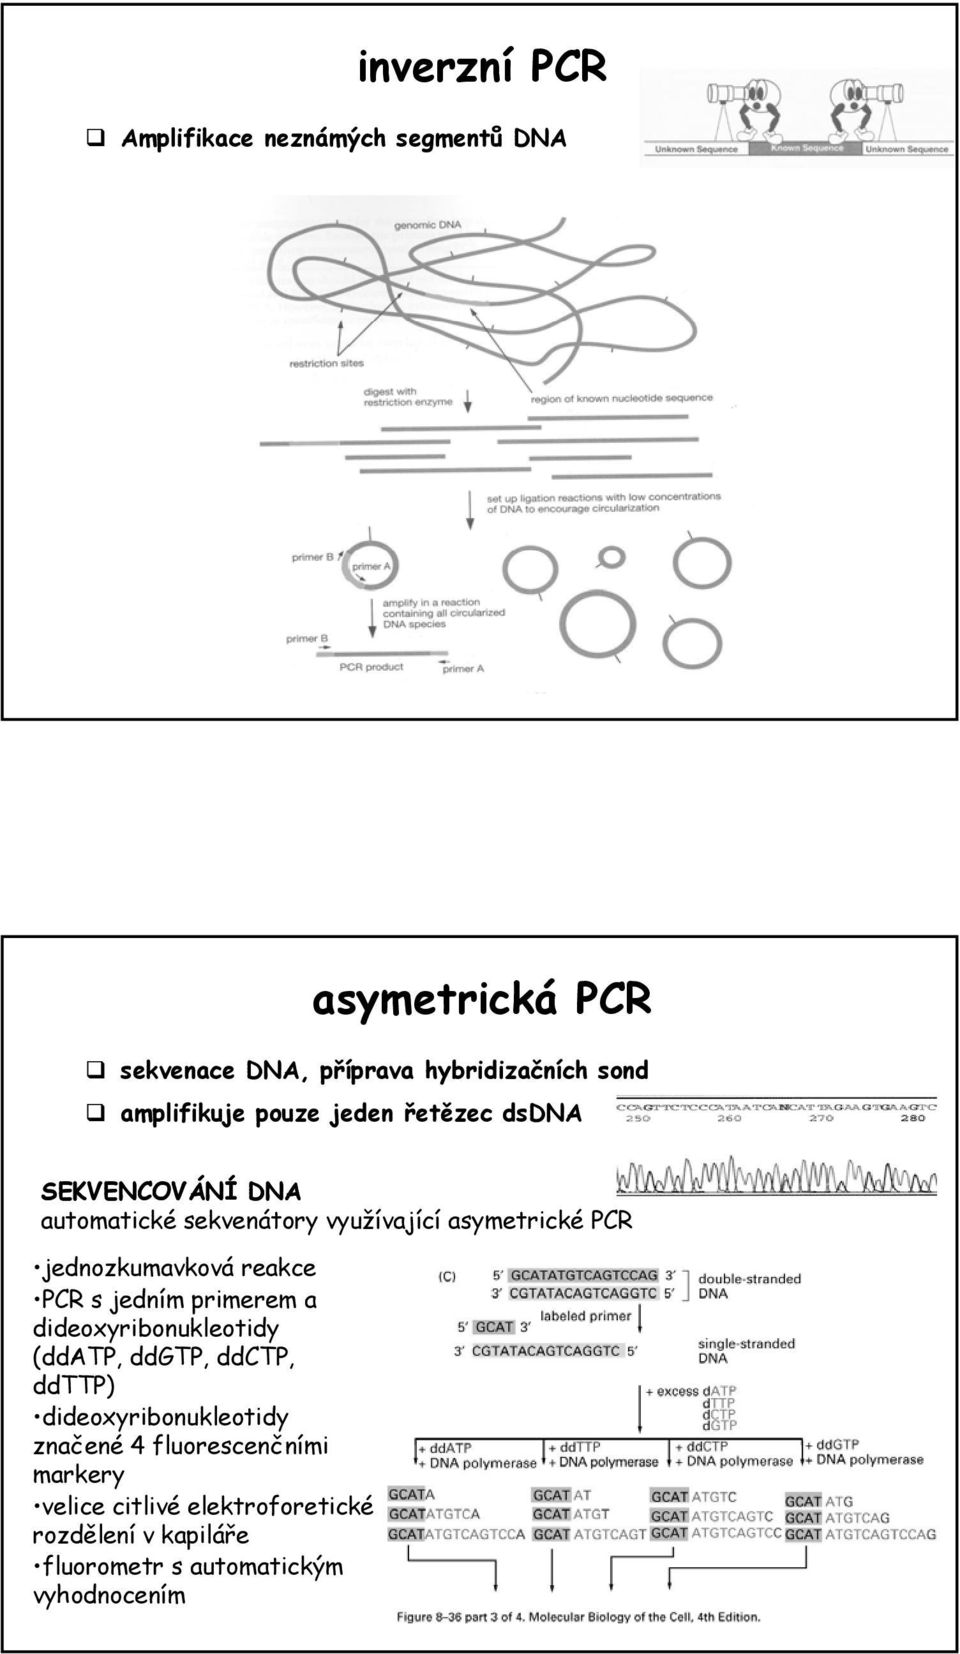 jednozkumavková reakce PCR s jedním primerem a dideoxyribonukleotidy (ddatp, ddgtp, ddctp, ddttp)